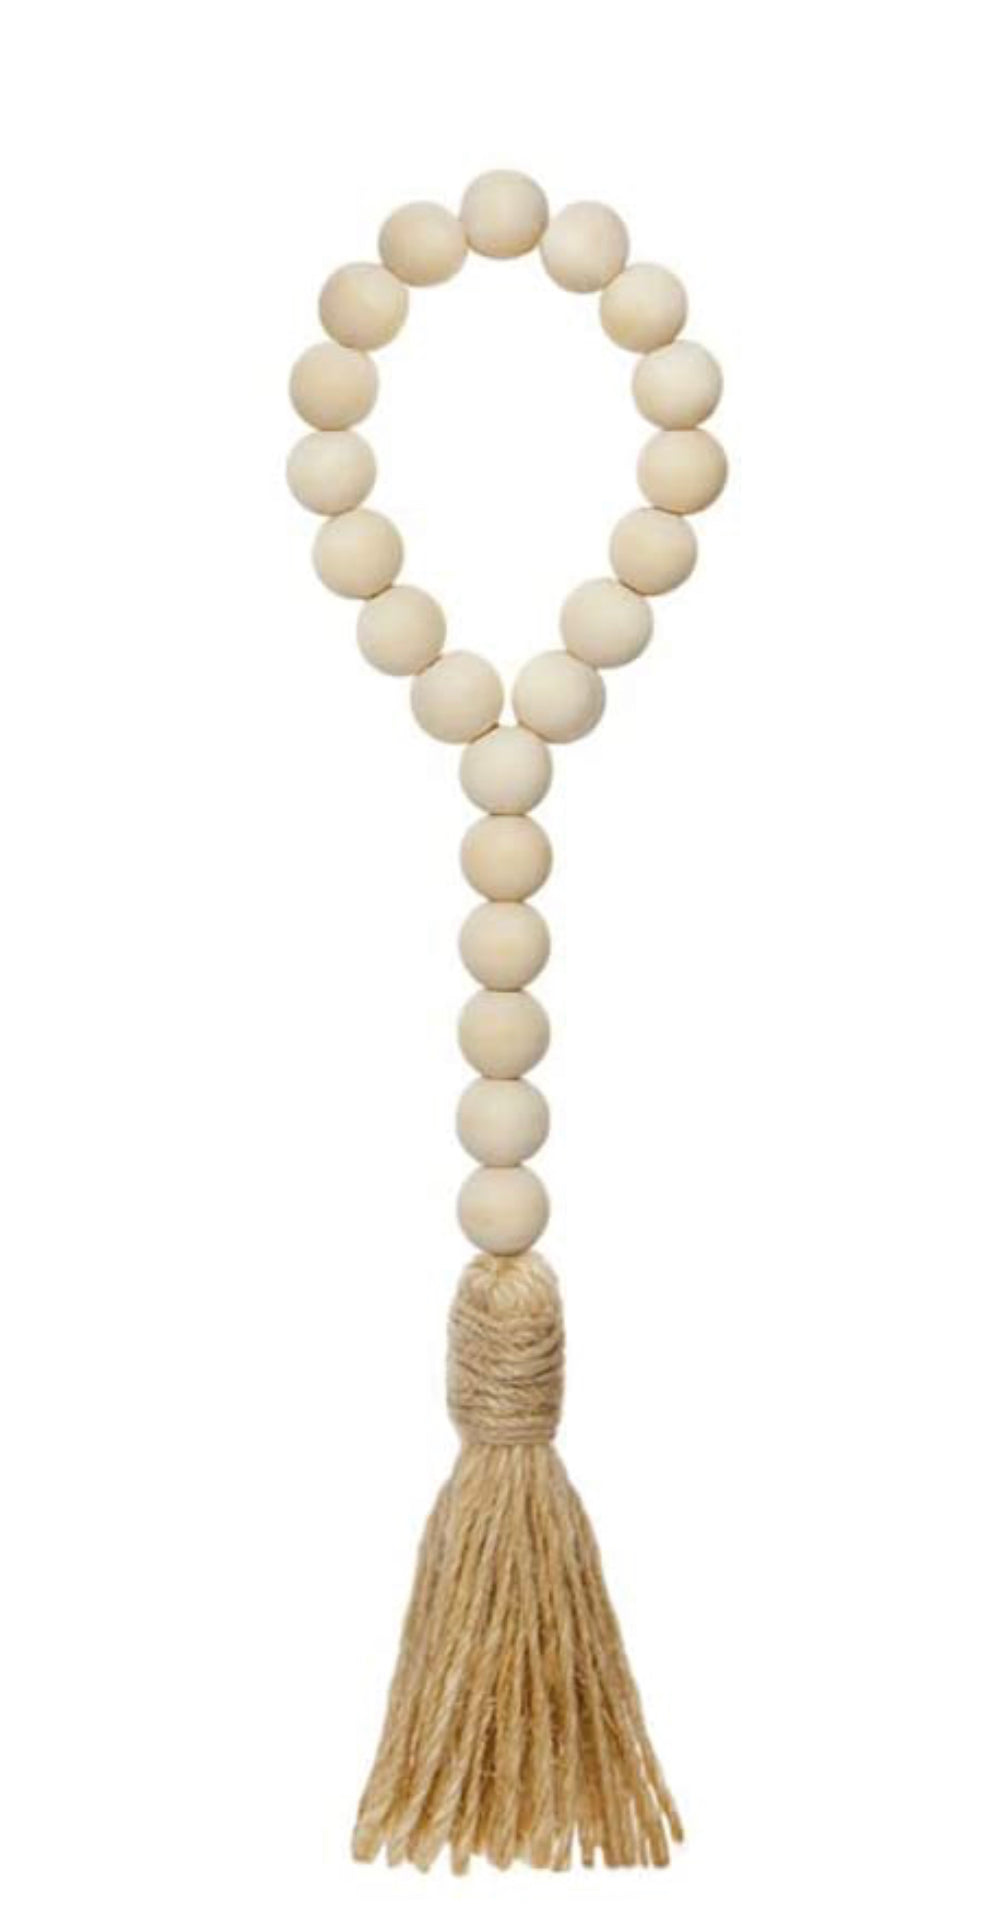 Wood Prayer Beads Loop, Ivory with Jute Tassels